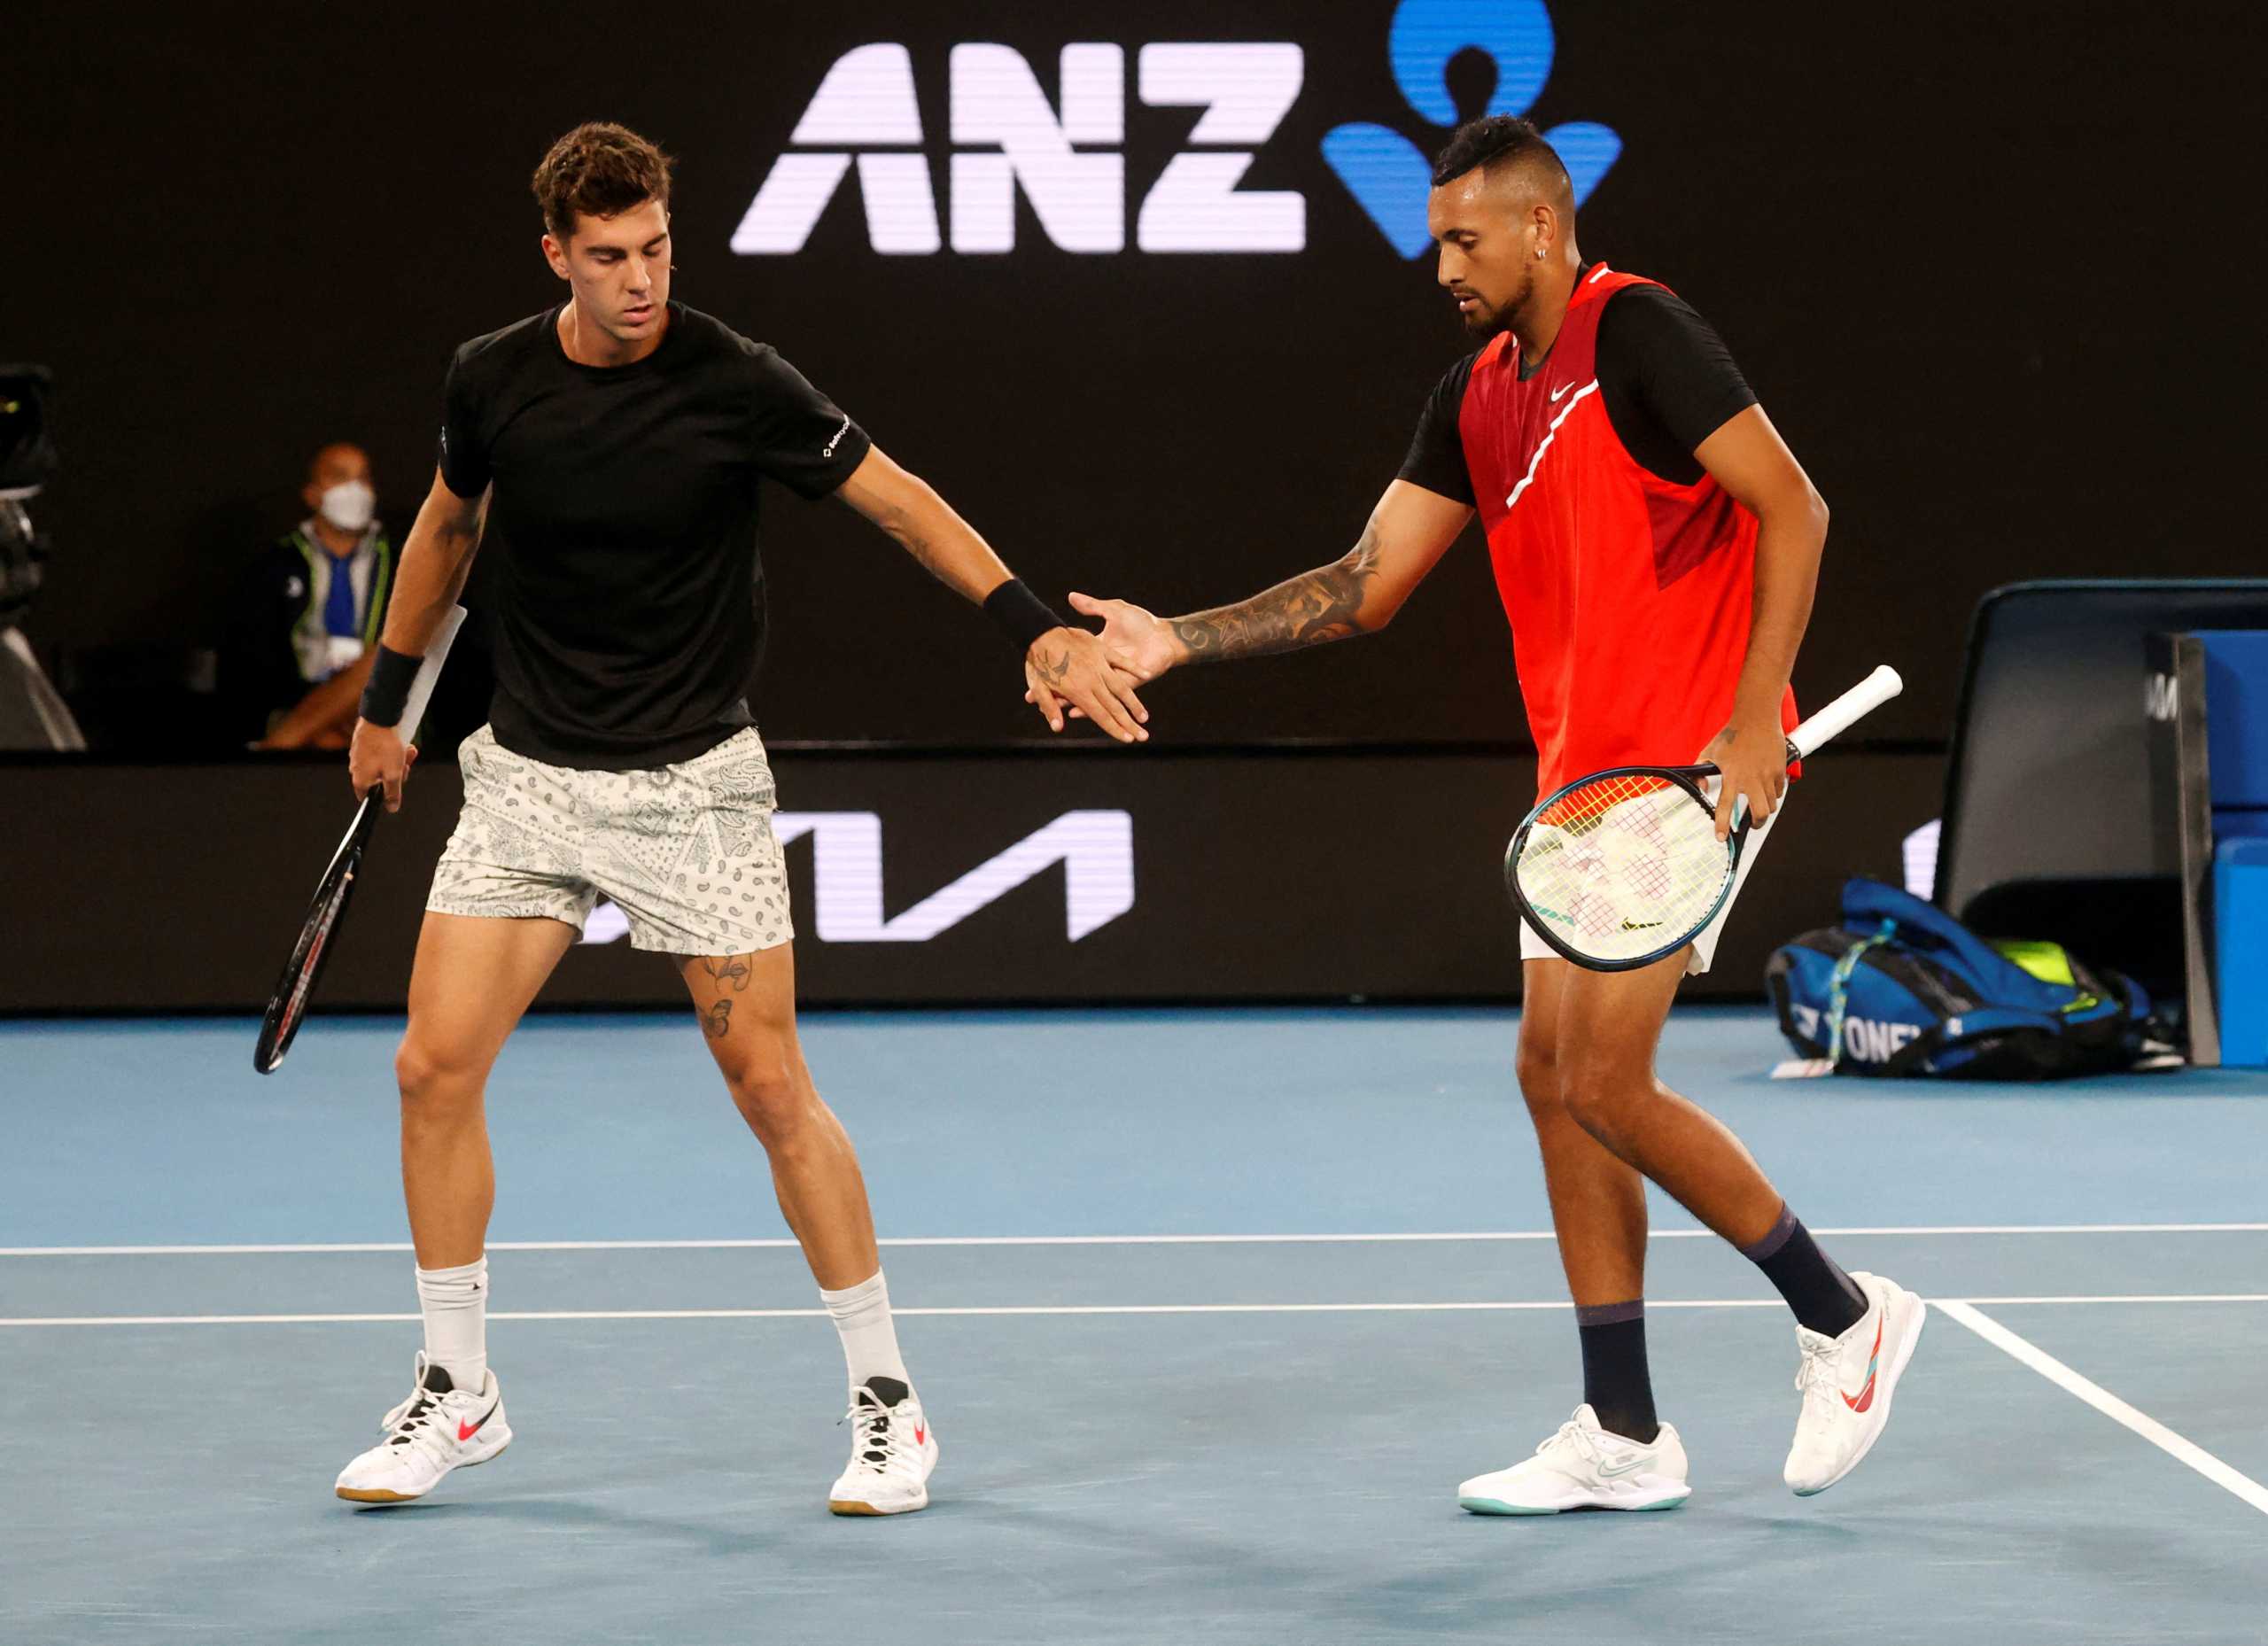 Νικ Κύργιος και Θανάσης Κοκκινάκης κατέκτησαν τον τίτλο στο διπλό στο Australian Open